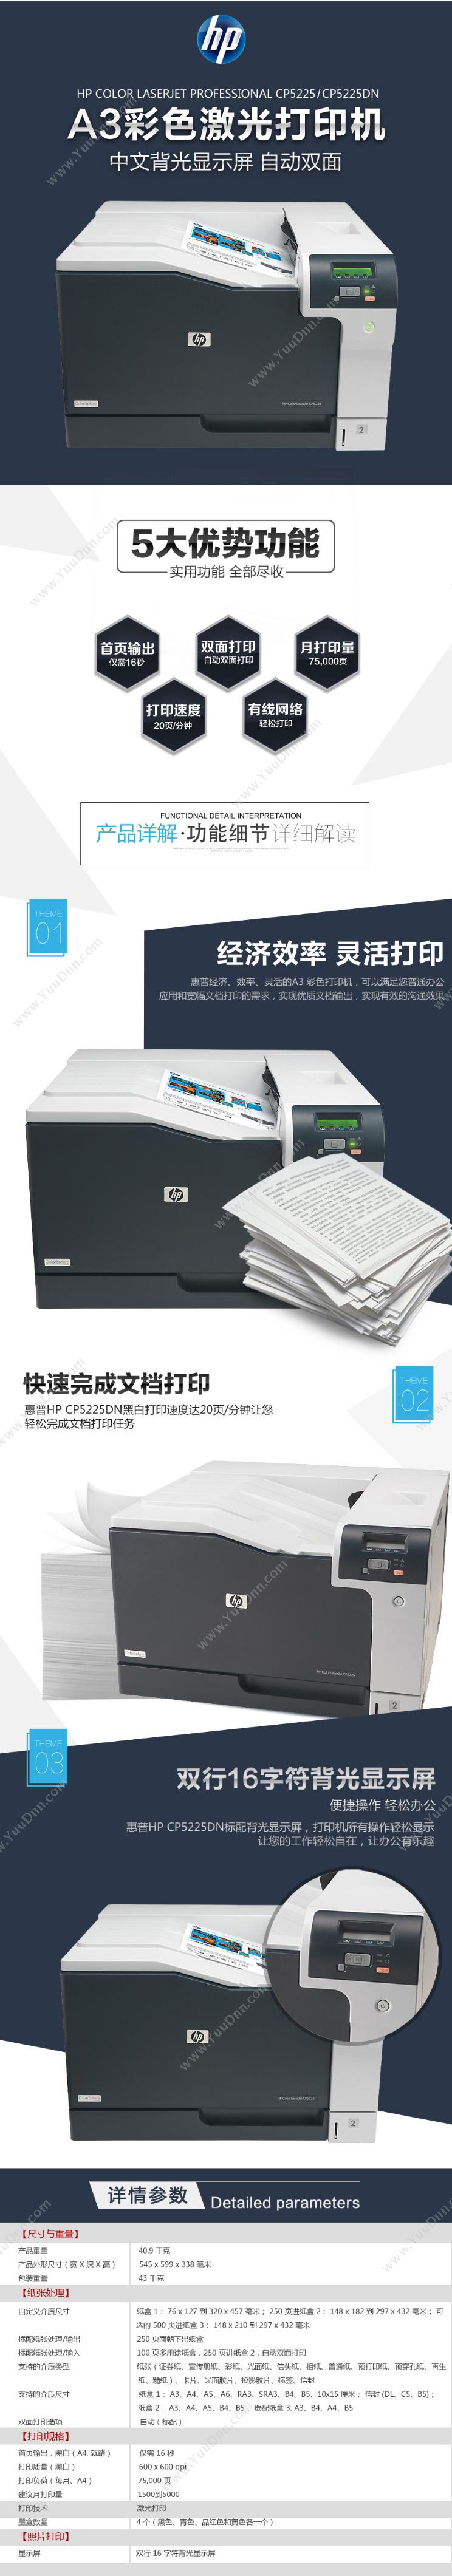 惠普 HP Color LaserJet Pro CP5225dn   自动双面2年上门  速度20/20 A3彩色激光打印机